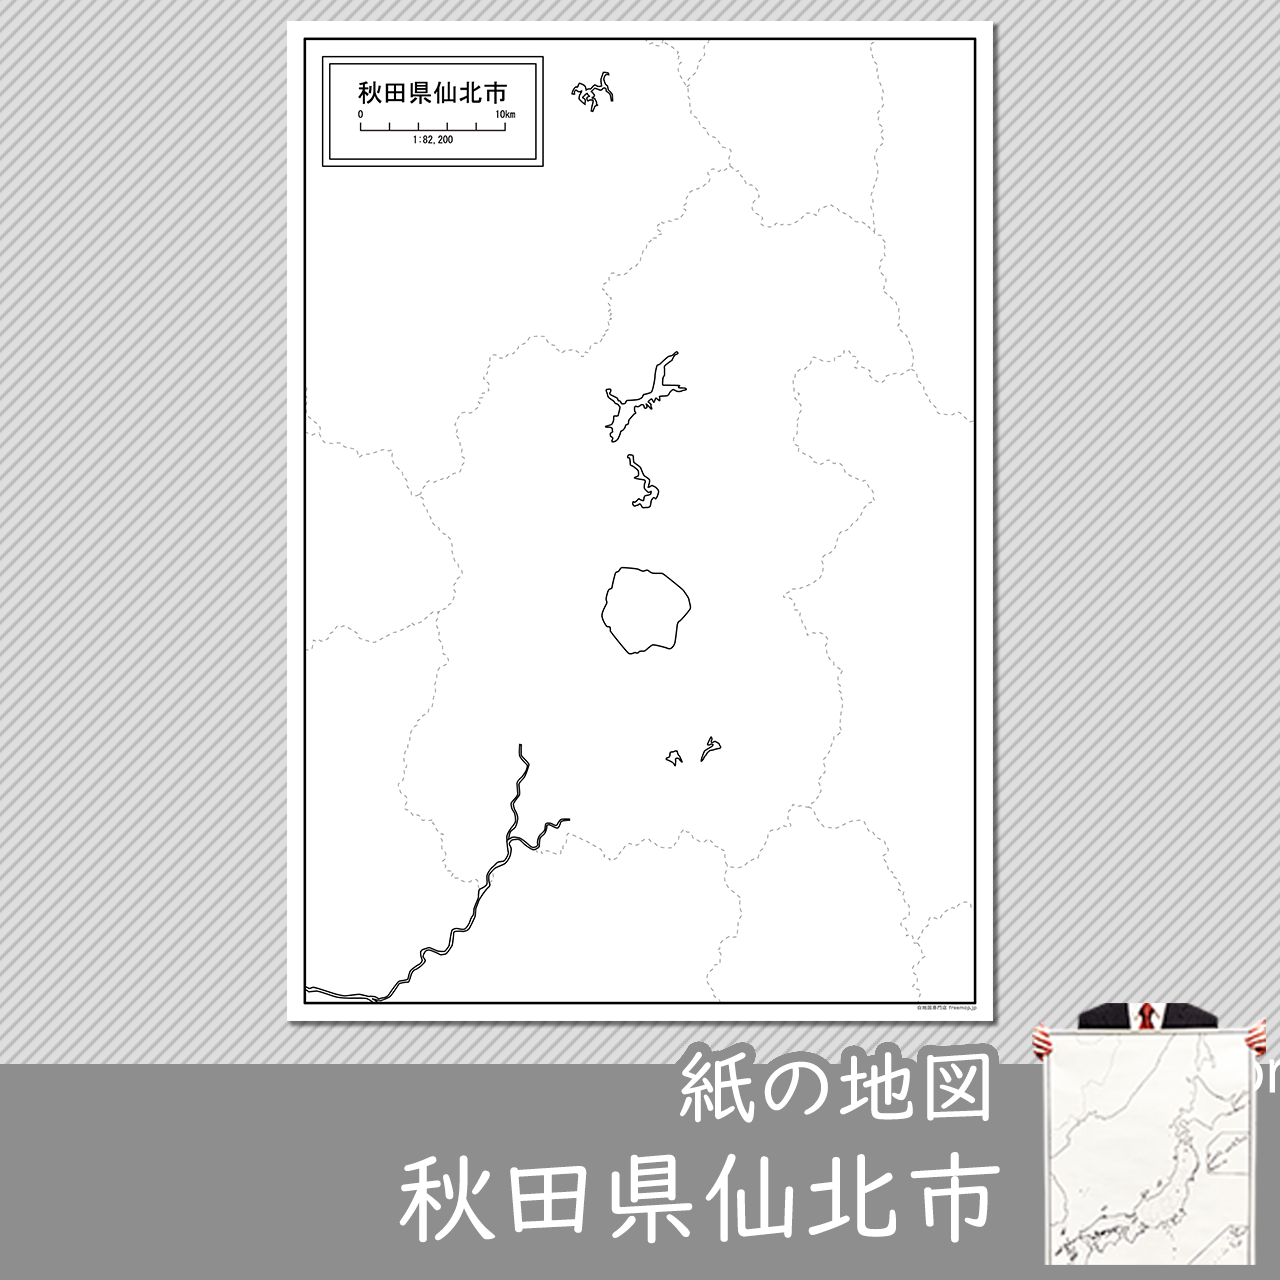 仙北市の紙の白地図のサムネイル